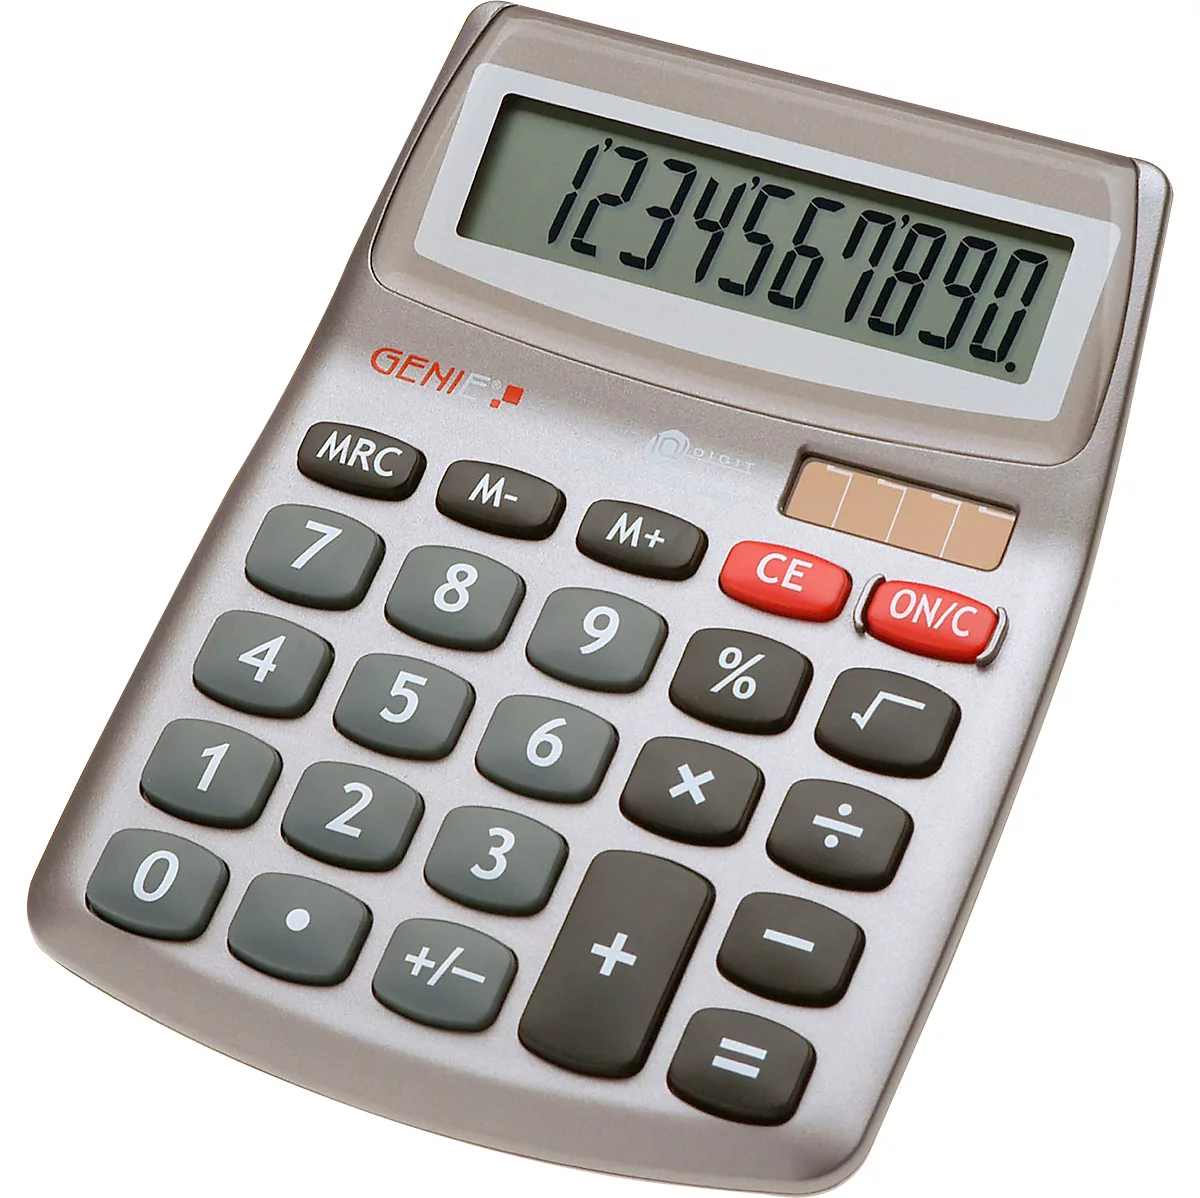 Calculadora de bolsillo Genie 540, con pantalla de 10 dígitos, alimentado con batería y solar